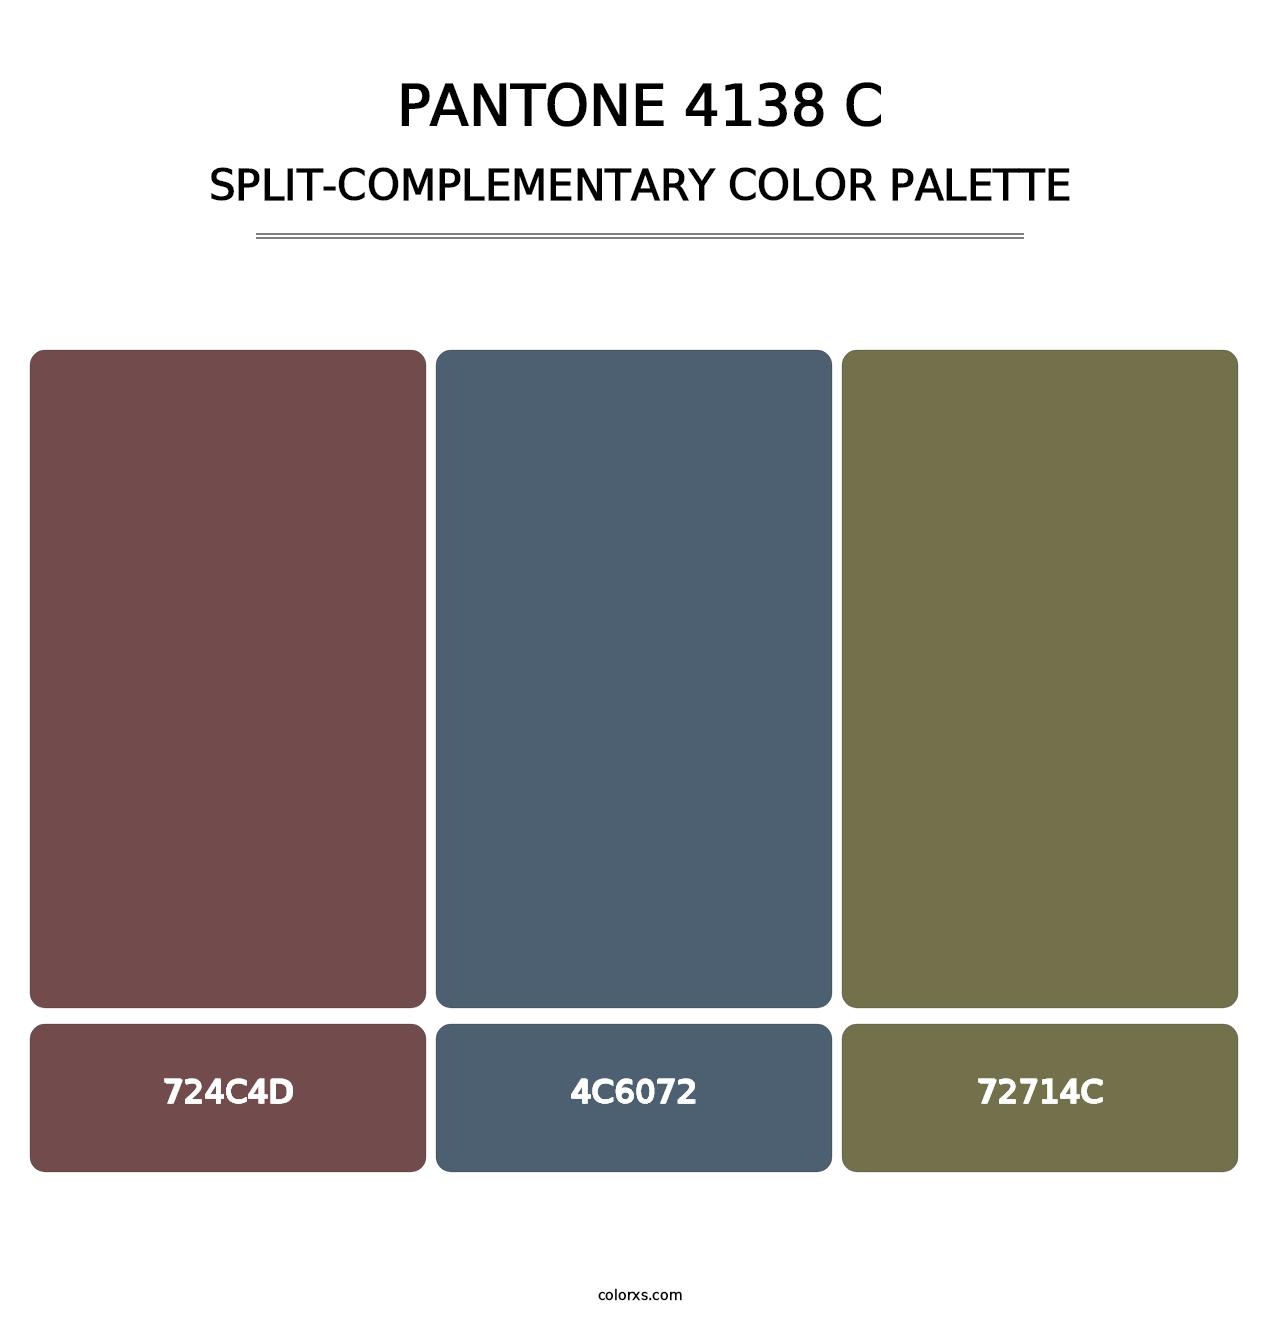 PANTONE 4138 C - Split-Complementary Color Palette